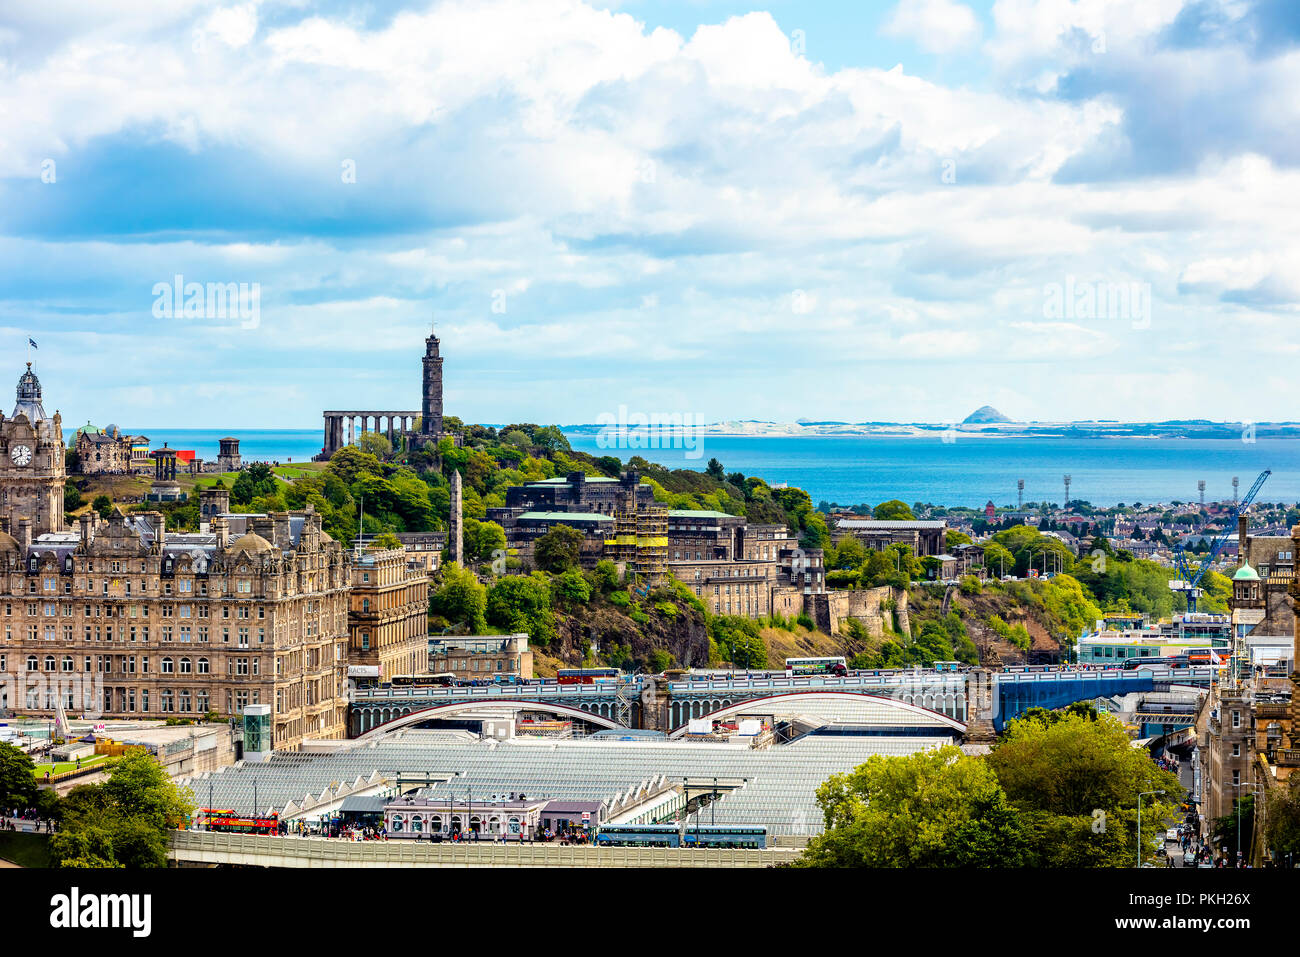 Ciudad de Edimburgo edificio urbano skyline vista aérea del Castillo de Edimburgo con Calton Hill Foto de stock